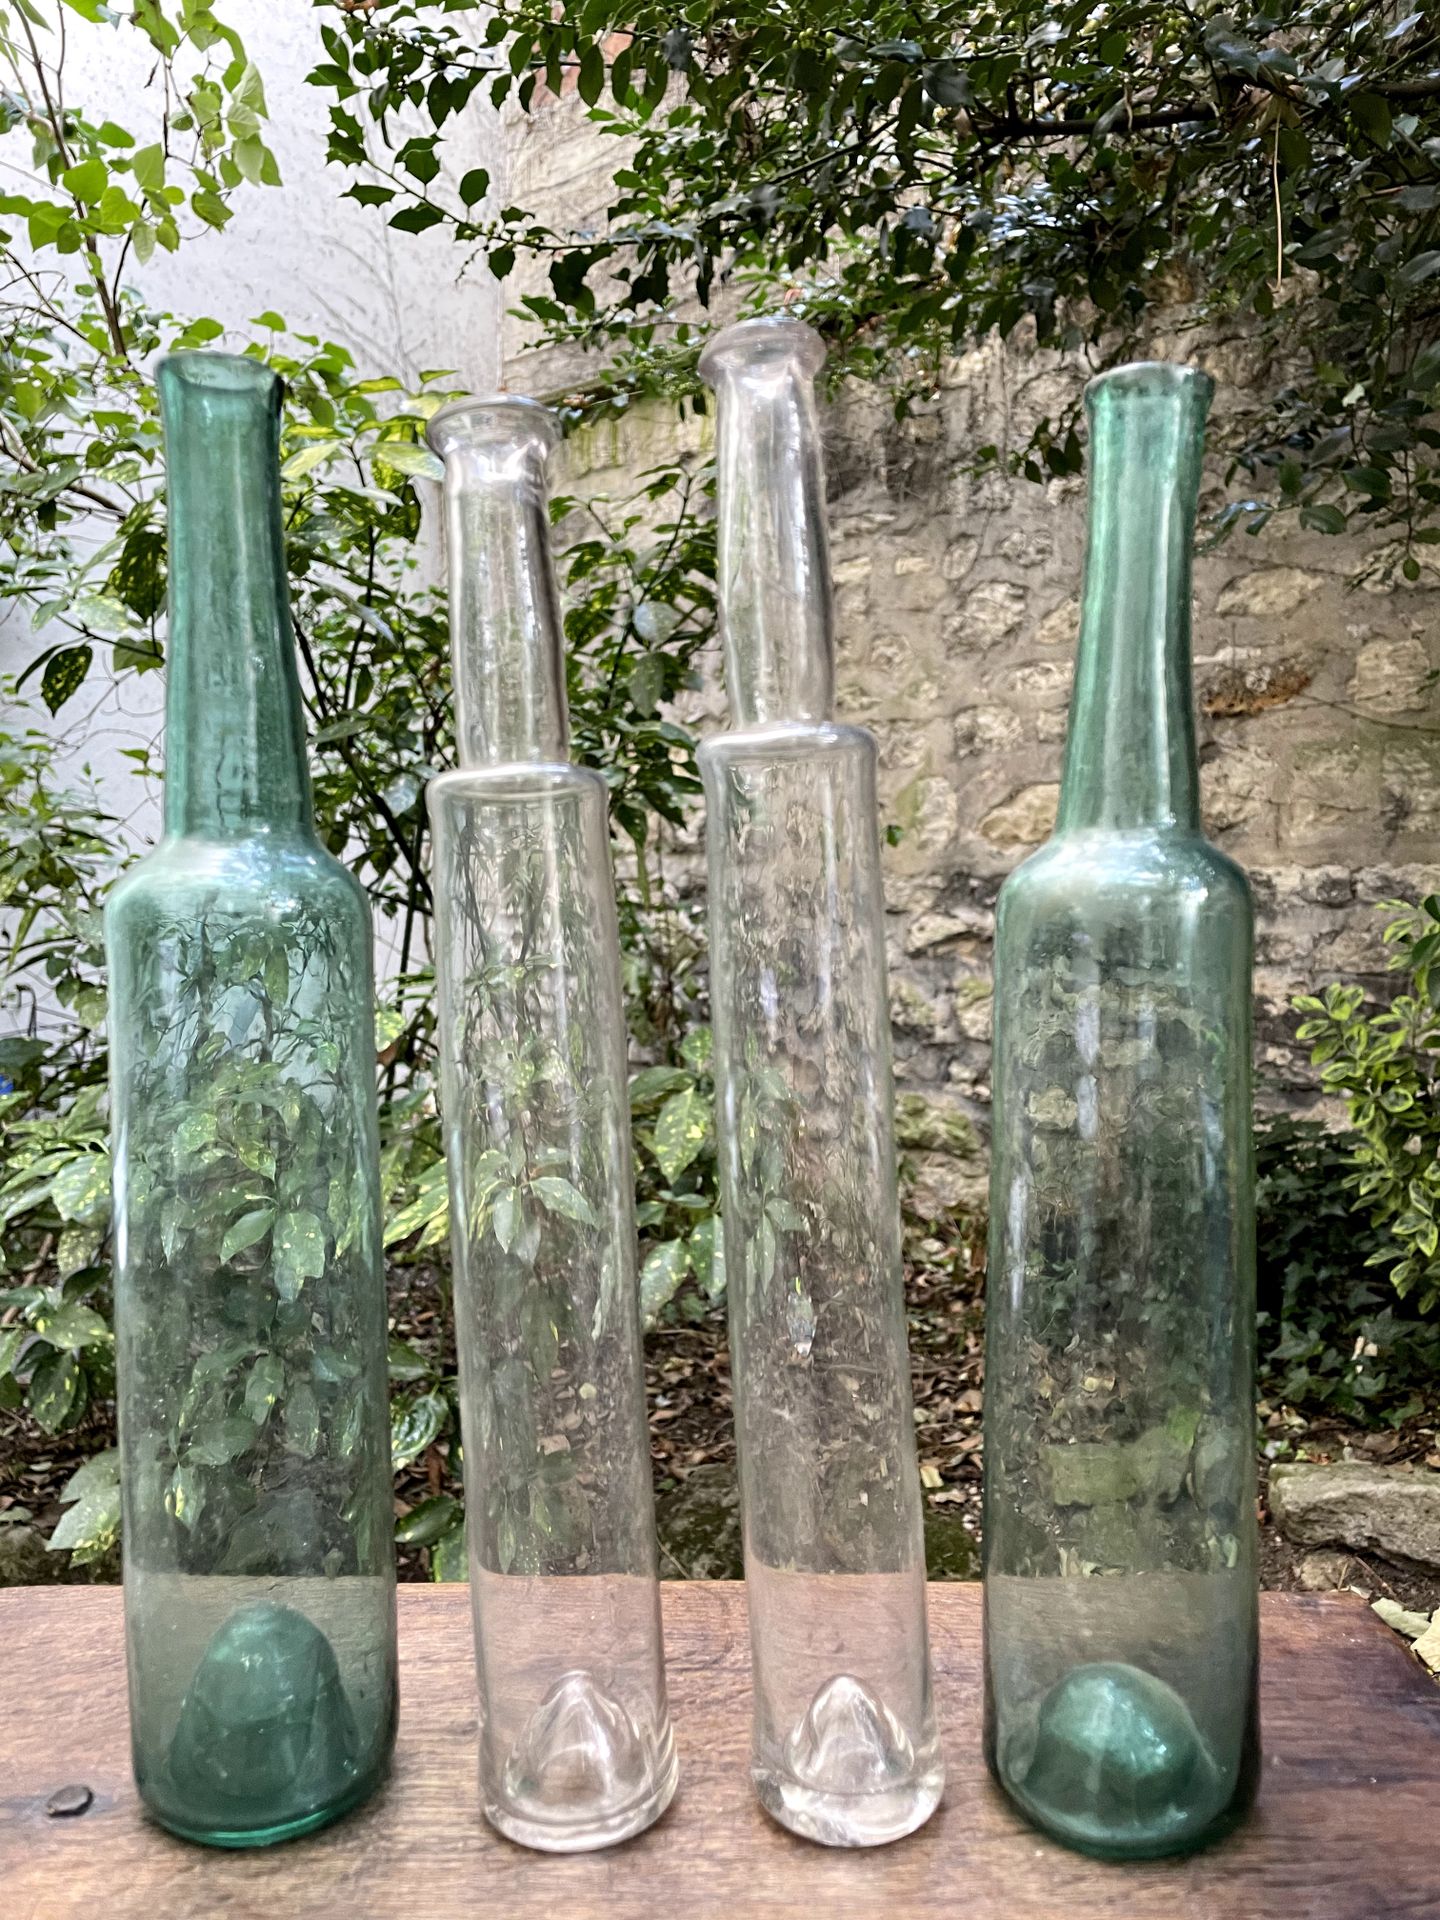 Null Quattro bottiglie di vetro, una coppia colorata di blu-verde.

Fine del 18°&hellip;